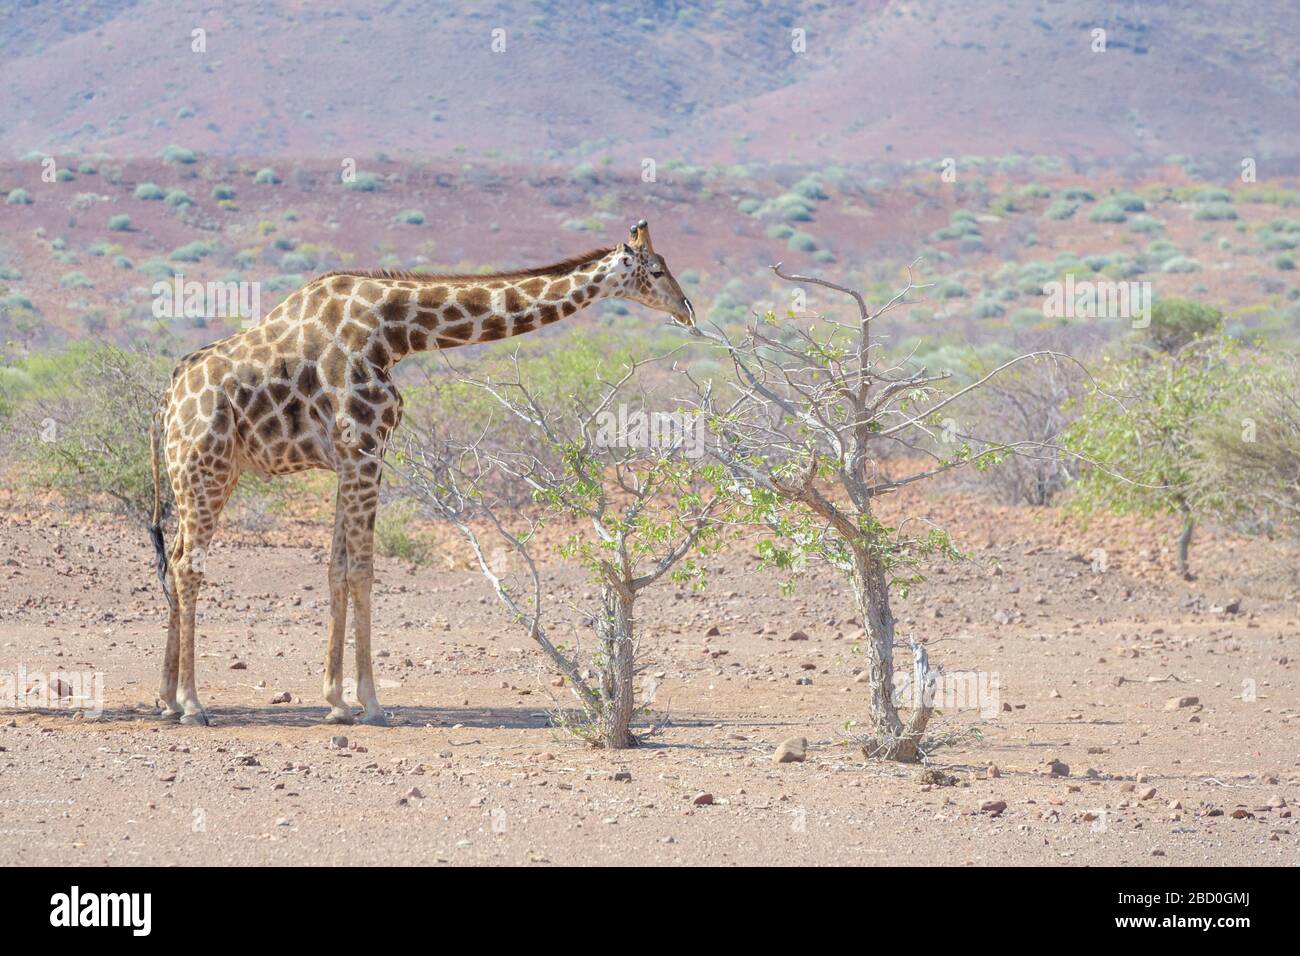 Girafe adaptée au désert (Giraffa camelopardalis) dans le paysage désertique se nourrissant d'acaciatree, Damaraland, Namibie Banque D'Images